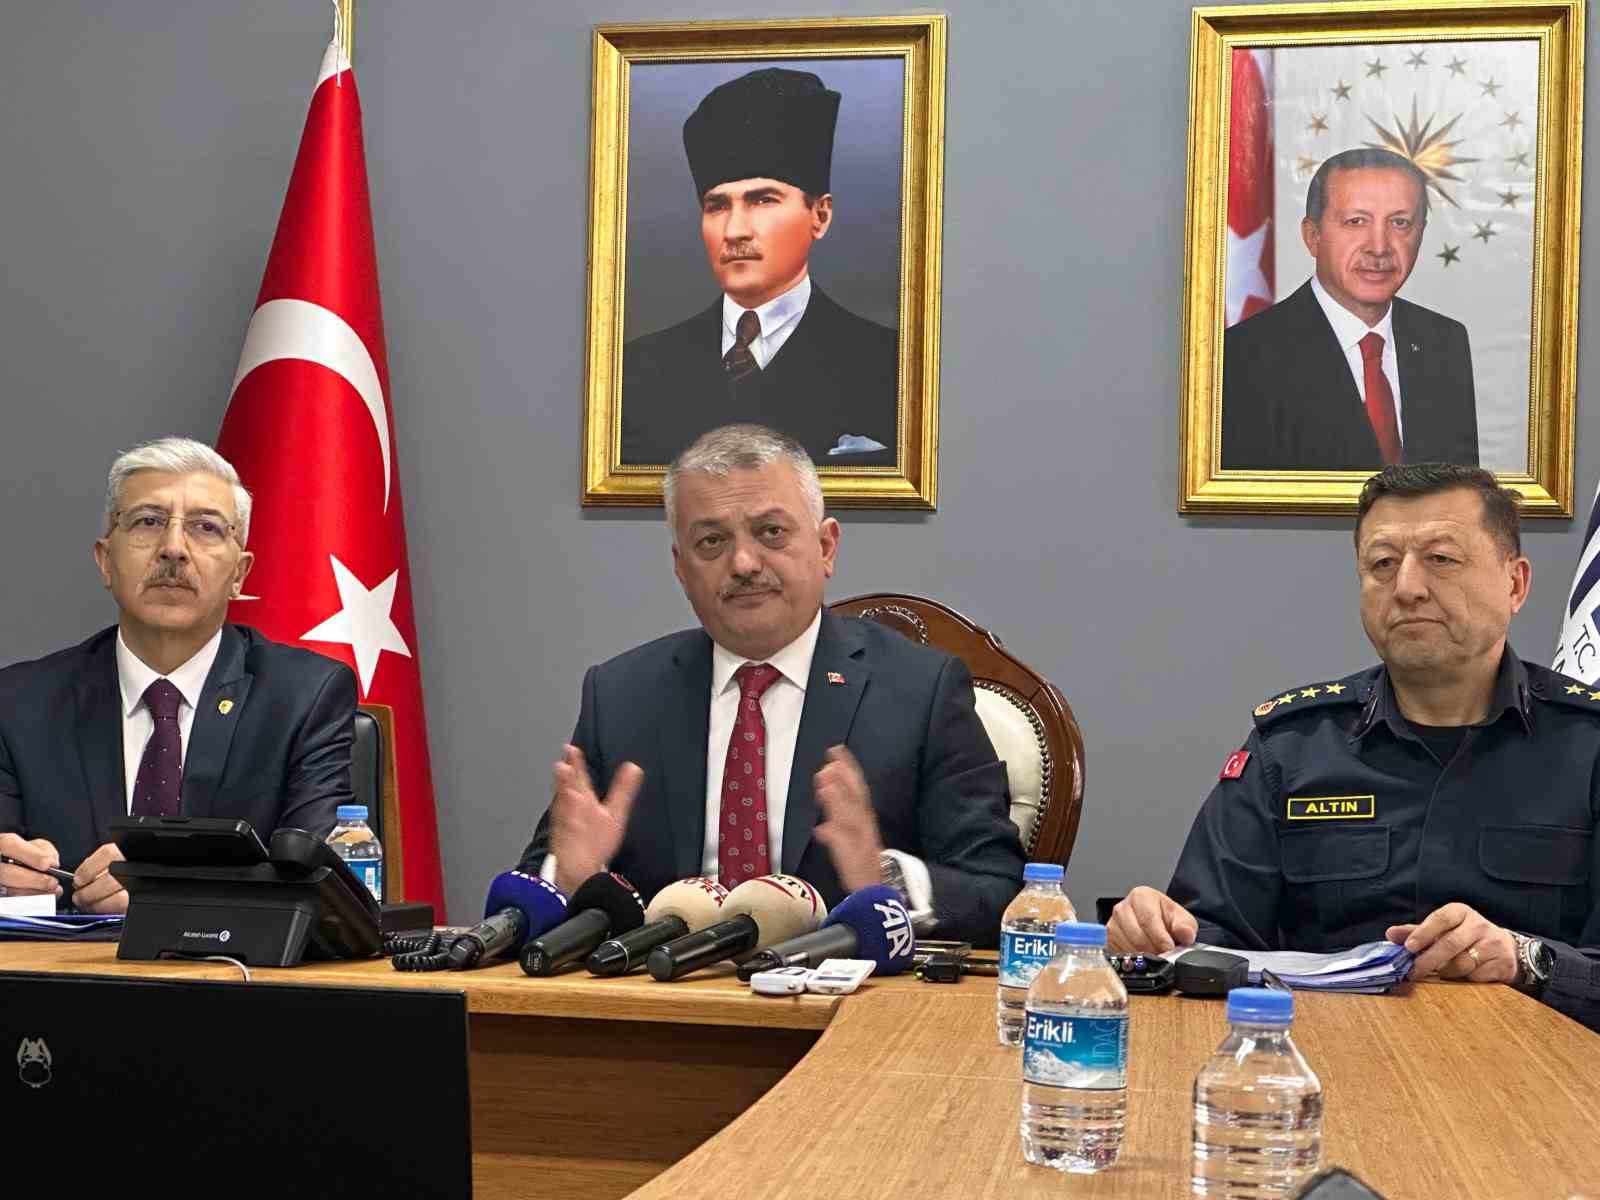 Vali Ersin Yazıcı, Malatya’daki güvenlik olaylarına ilişkin bilgiler verdi
